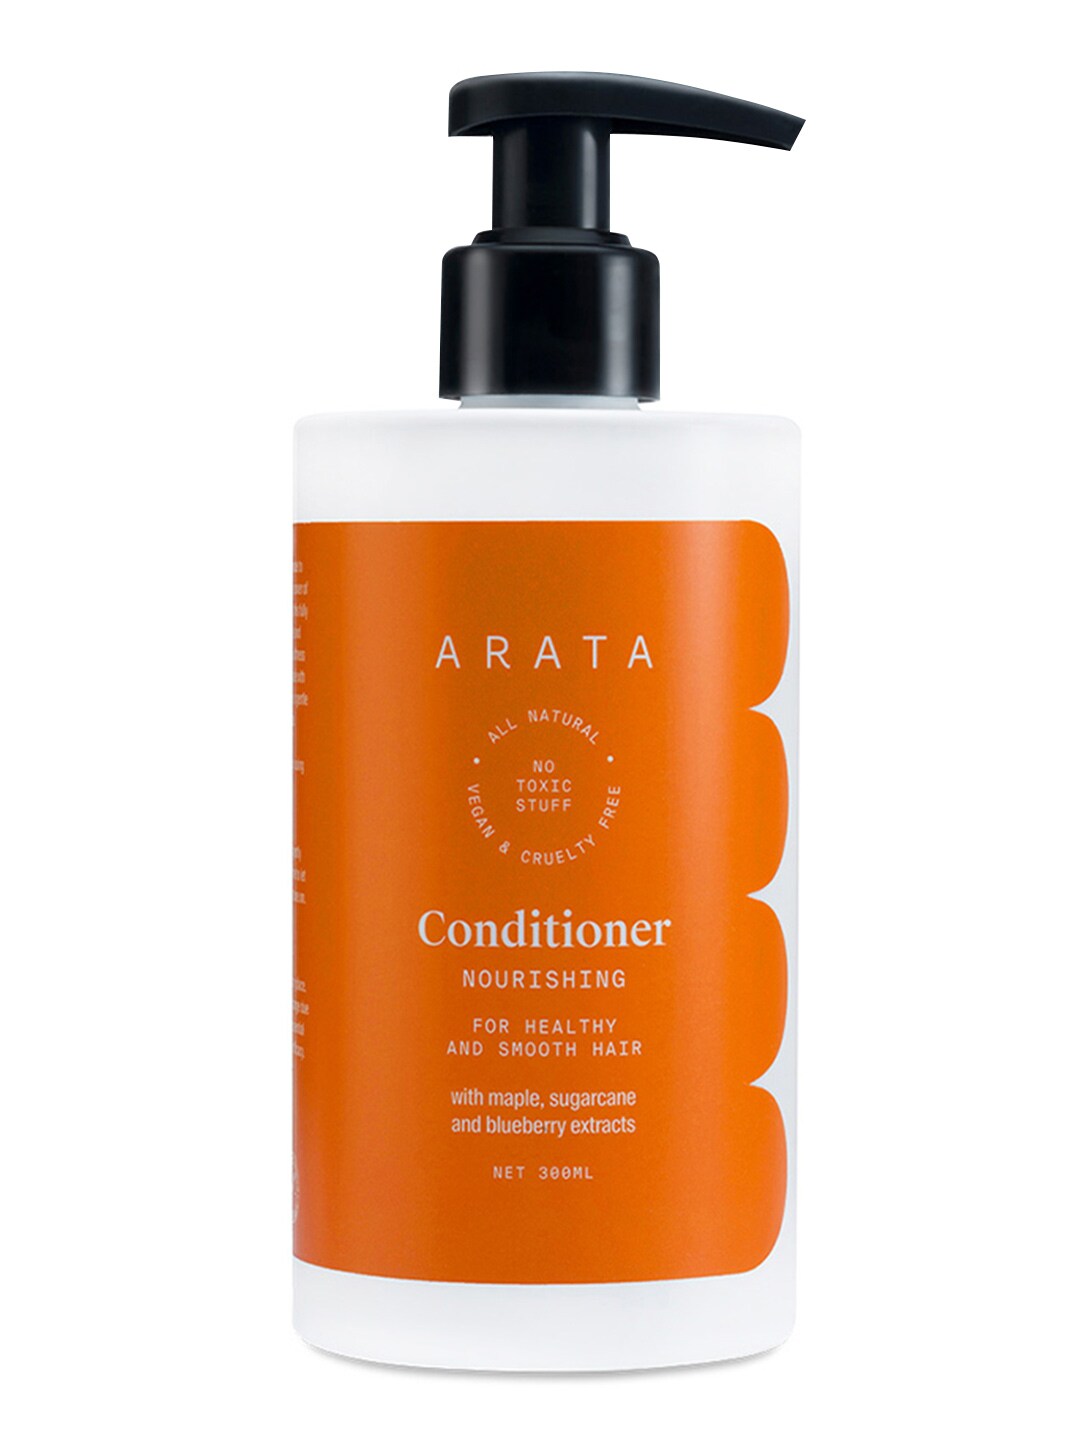 ARATA Unisex Natural Nourishing Hair Conditioner 300 ml Price in India